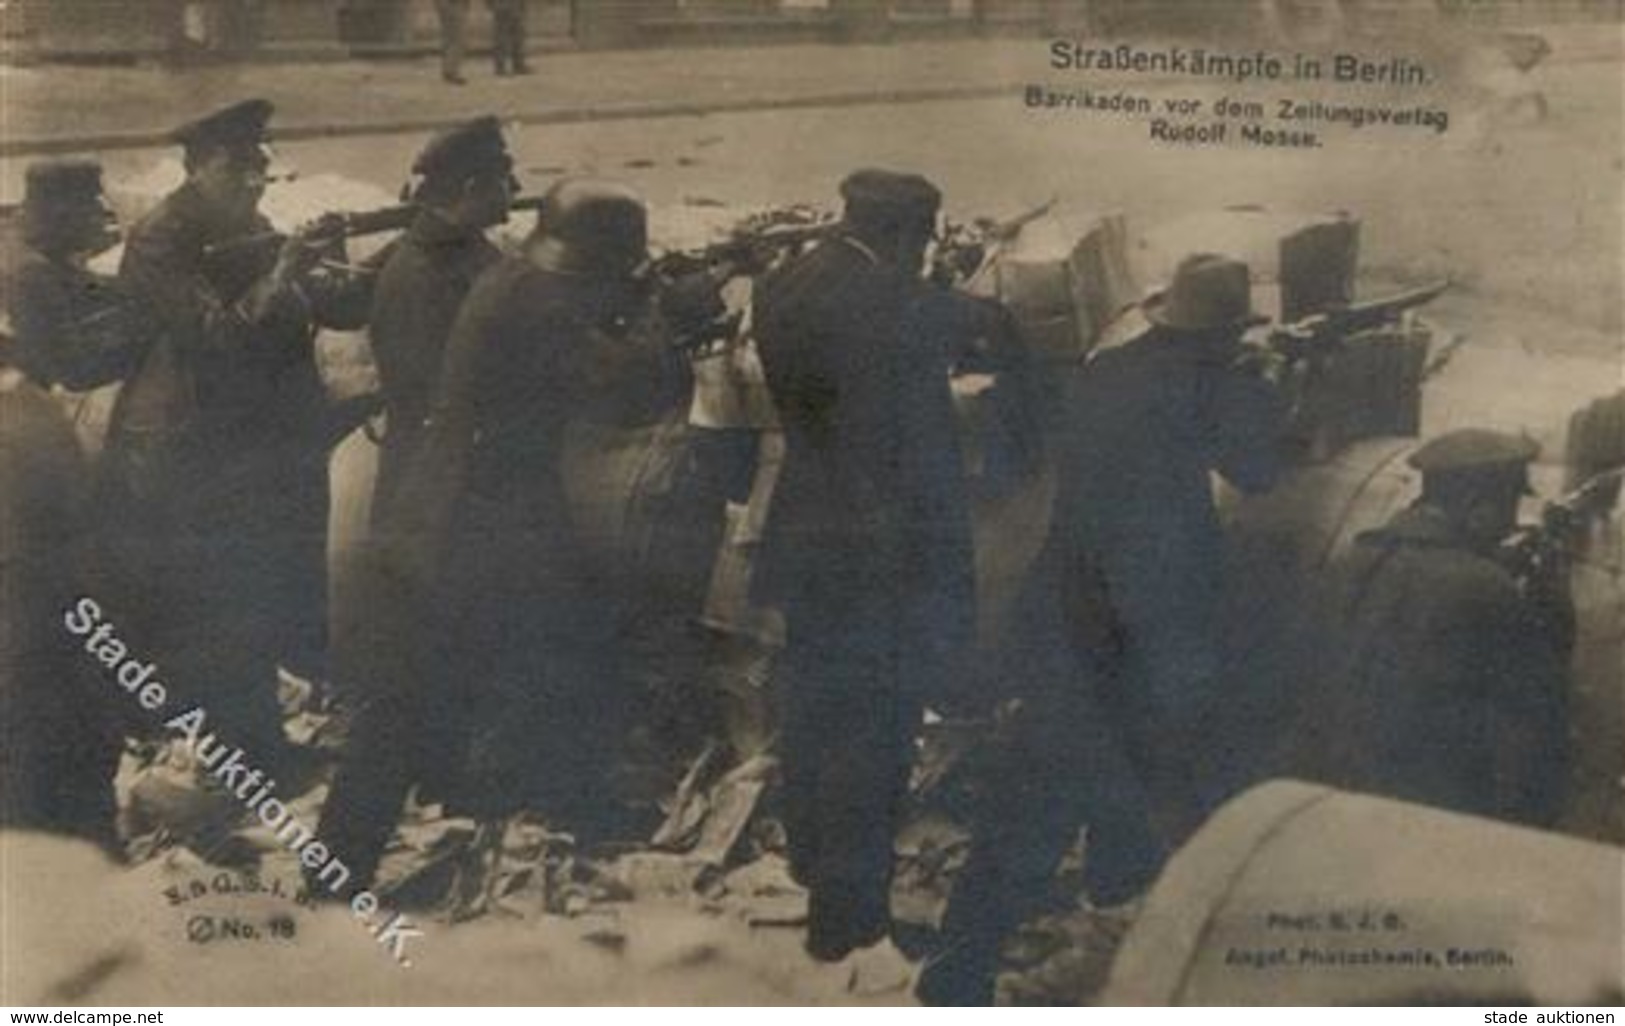 REVOLUTION BERLIN 1919 - STRAßENKÄMPFE In Berlin Nr. 18 - Barrikaden Vor Dem Zeitungsverlag Rudolf Mosse I - Krieg